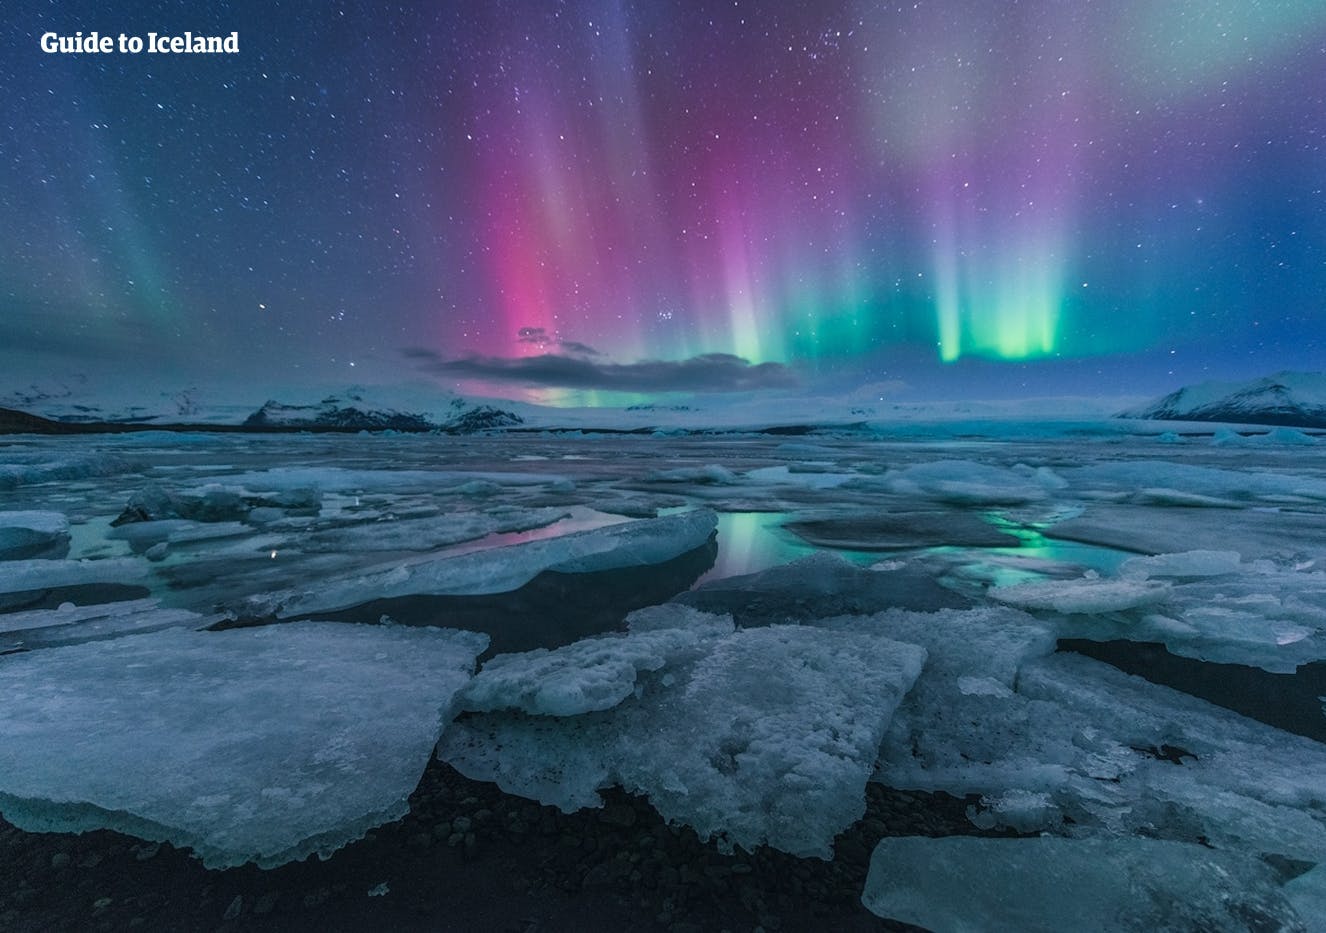 Het prachtige noorderlicht dat in de lucht boven de Jökulsárlón-gletsjerlagune danst